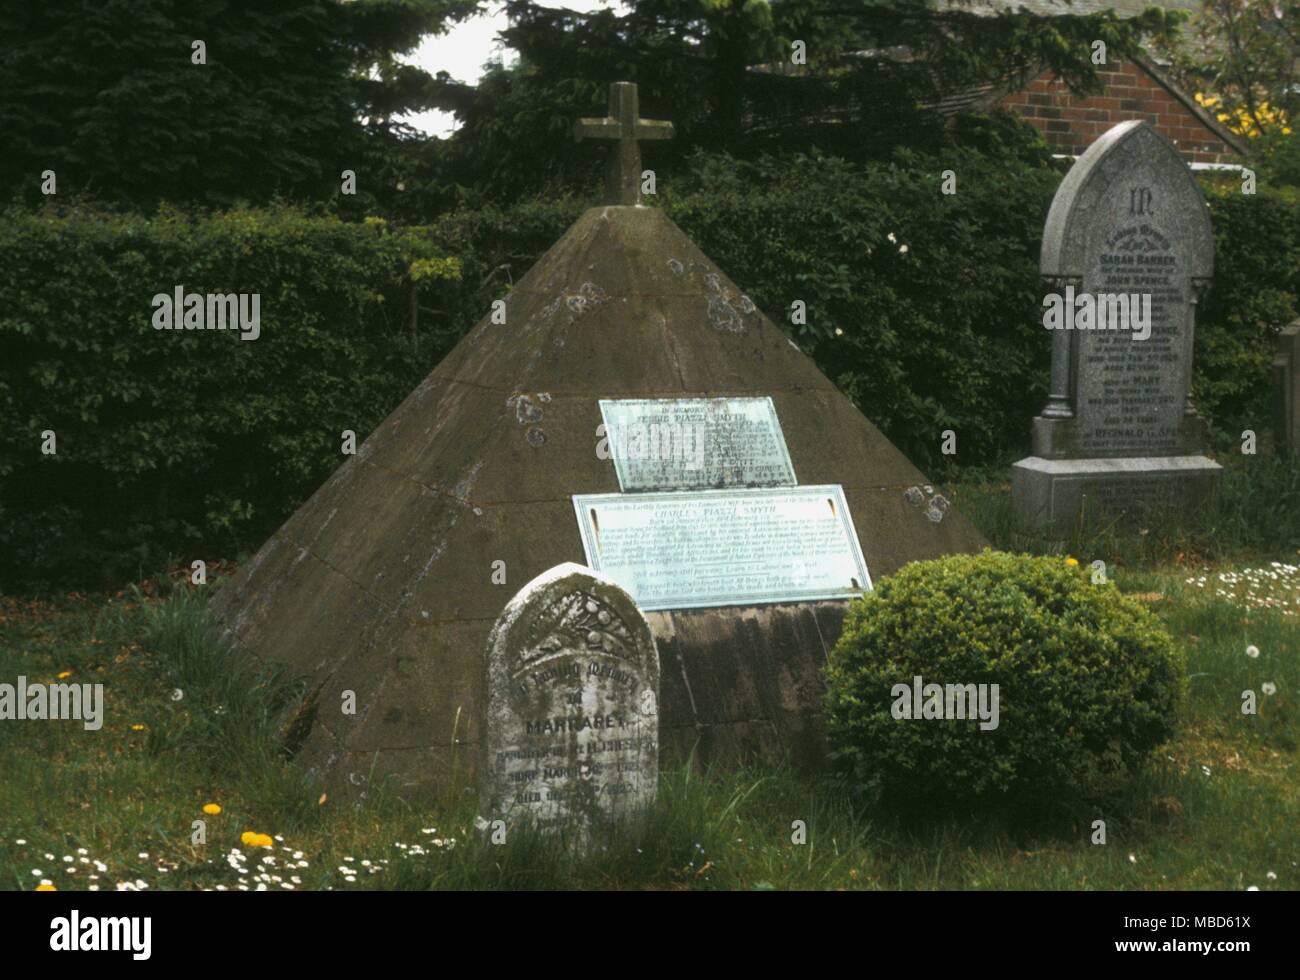 Cimitero simboli Sharow Tomba di Piazzi Smythe nel sagrato della chiesa qui è una tomba piramidale marcatore di Charles Piazzi Smyth, il noto astronomo reale di Scozia e fondatore di piramidalogia Foto Stock